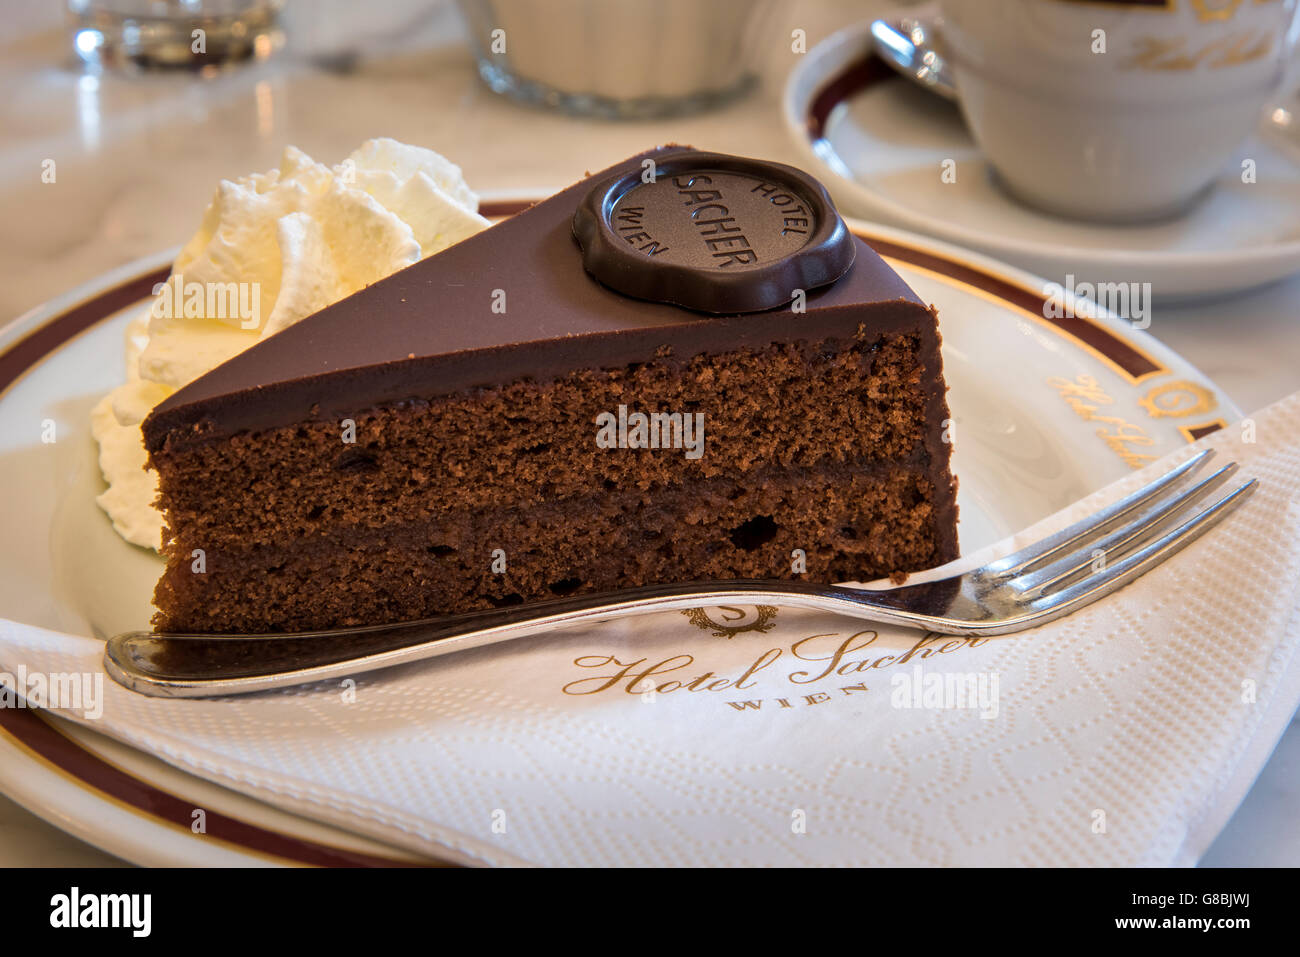 Le gâteau au chocolat Sachertorte original servi au Café Sacher, l'hôtel Sacher, à Vienne, Autriche Banque D'Images